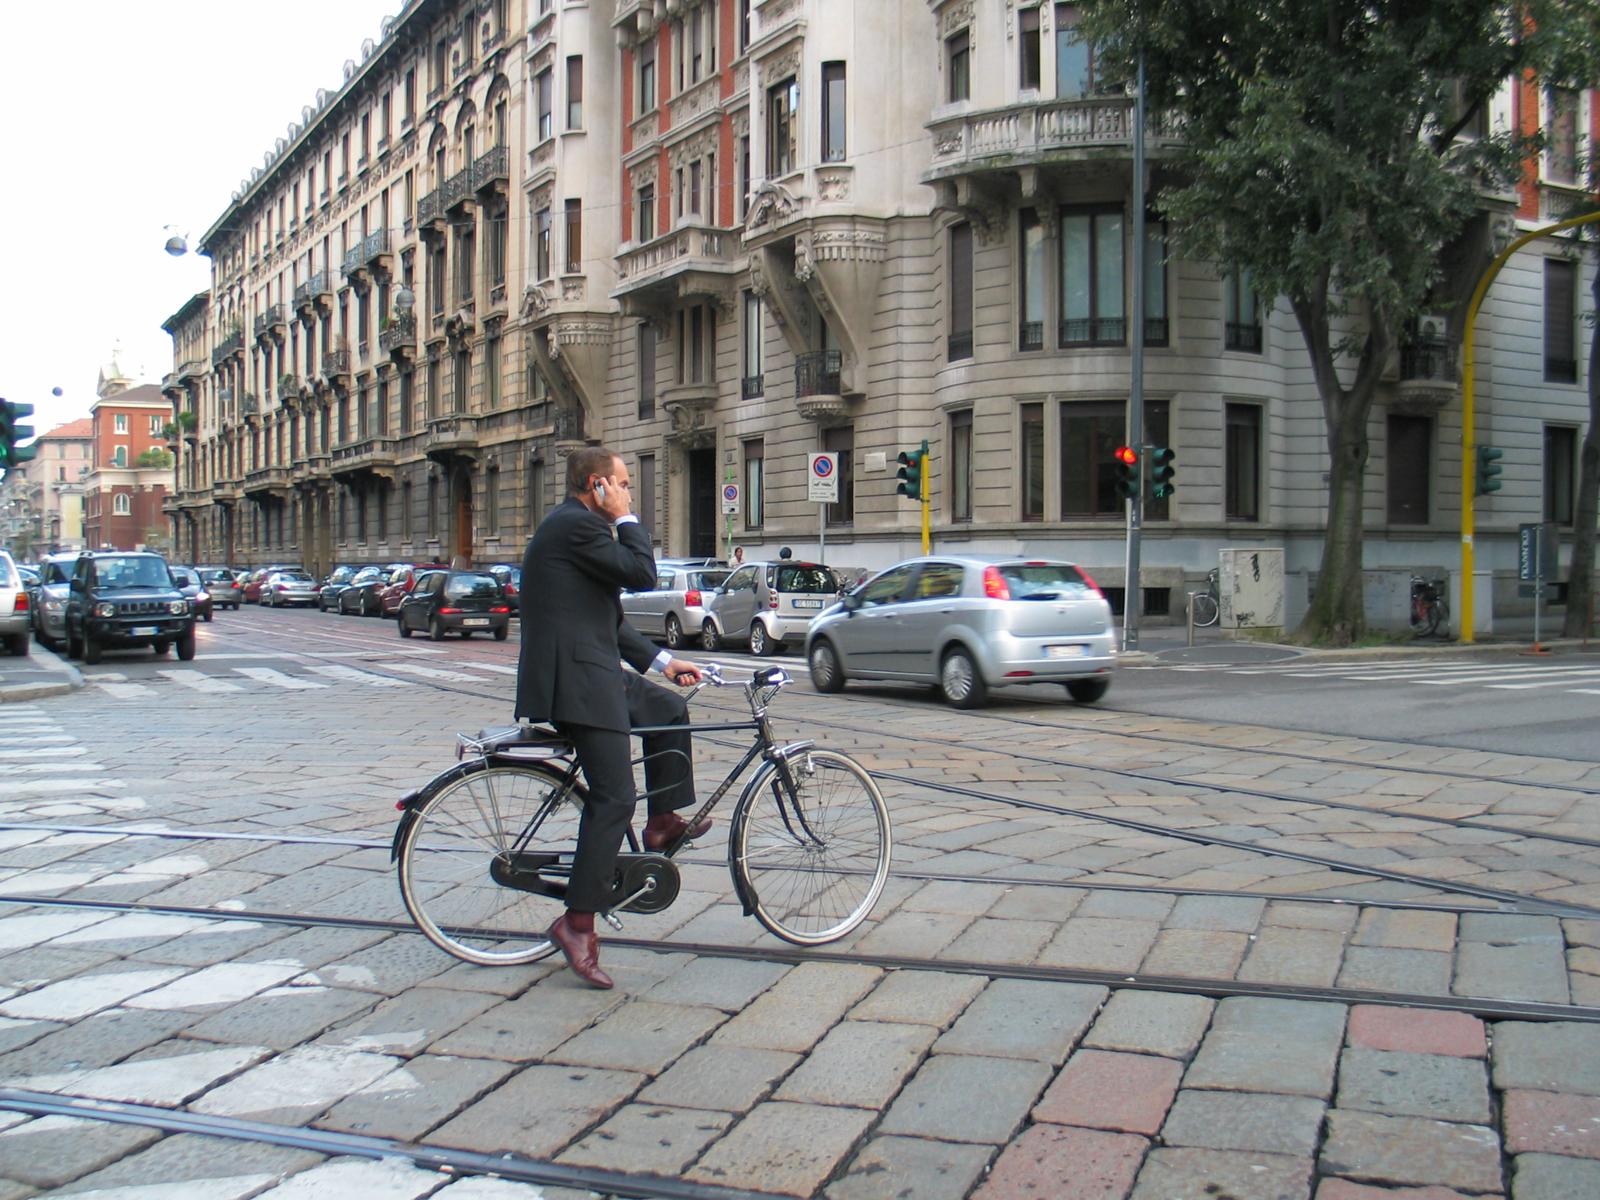 Guy on bike on cellphone